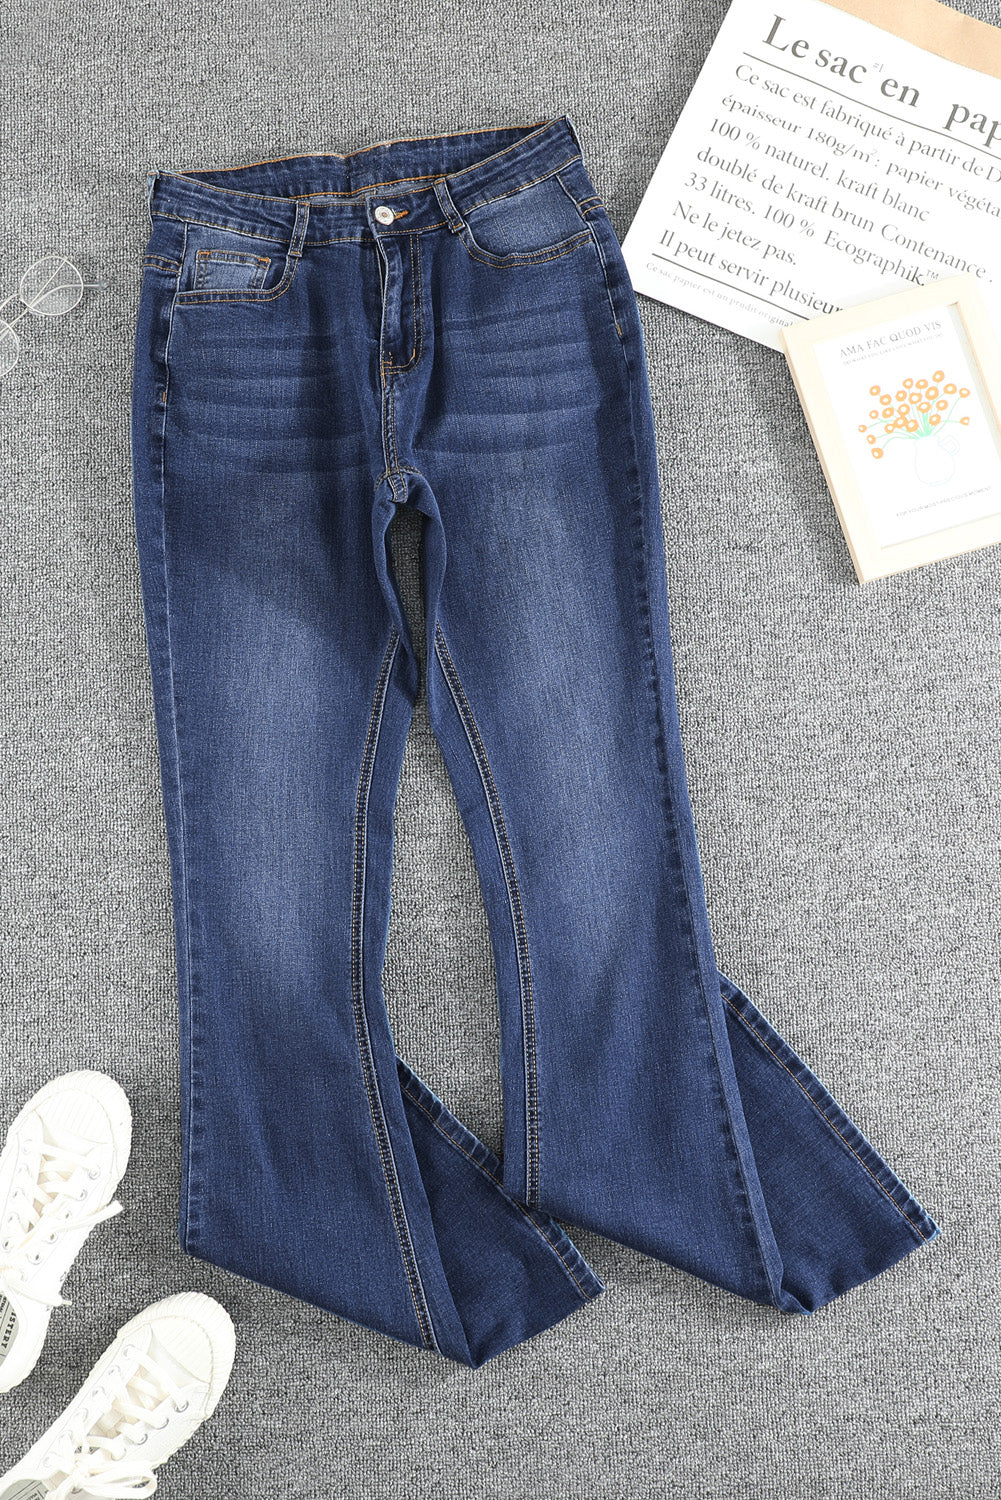 Srednje plave isprane vintage traperice širokih nogavica